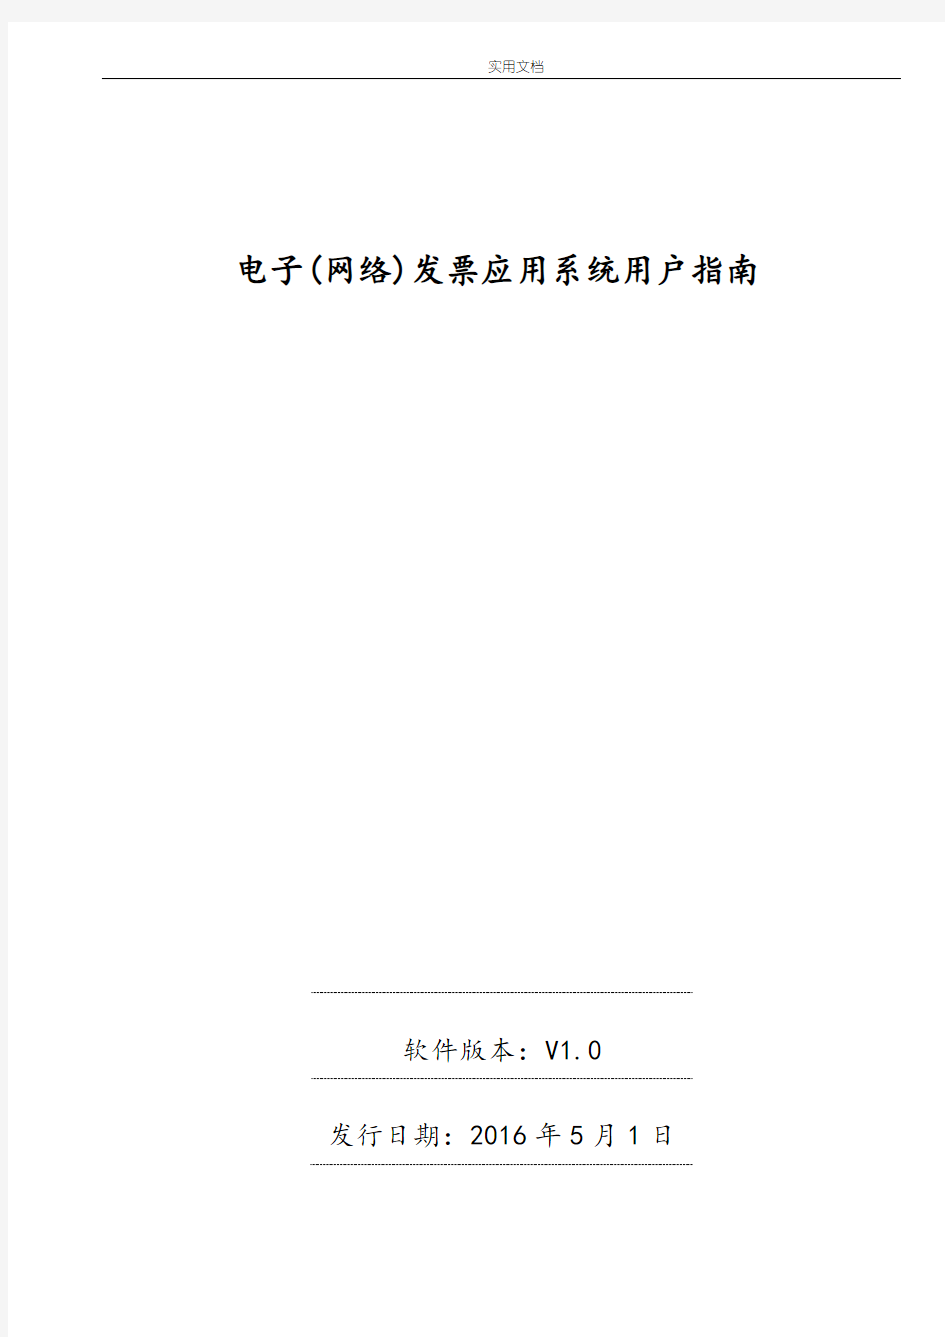 广东省国家税务局电子(网络)发票应用系统用户指南设计